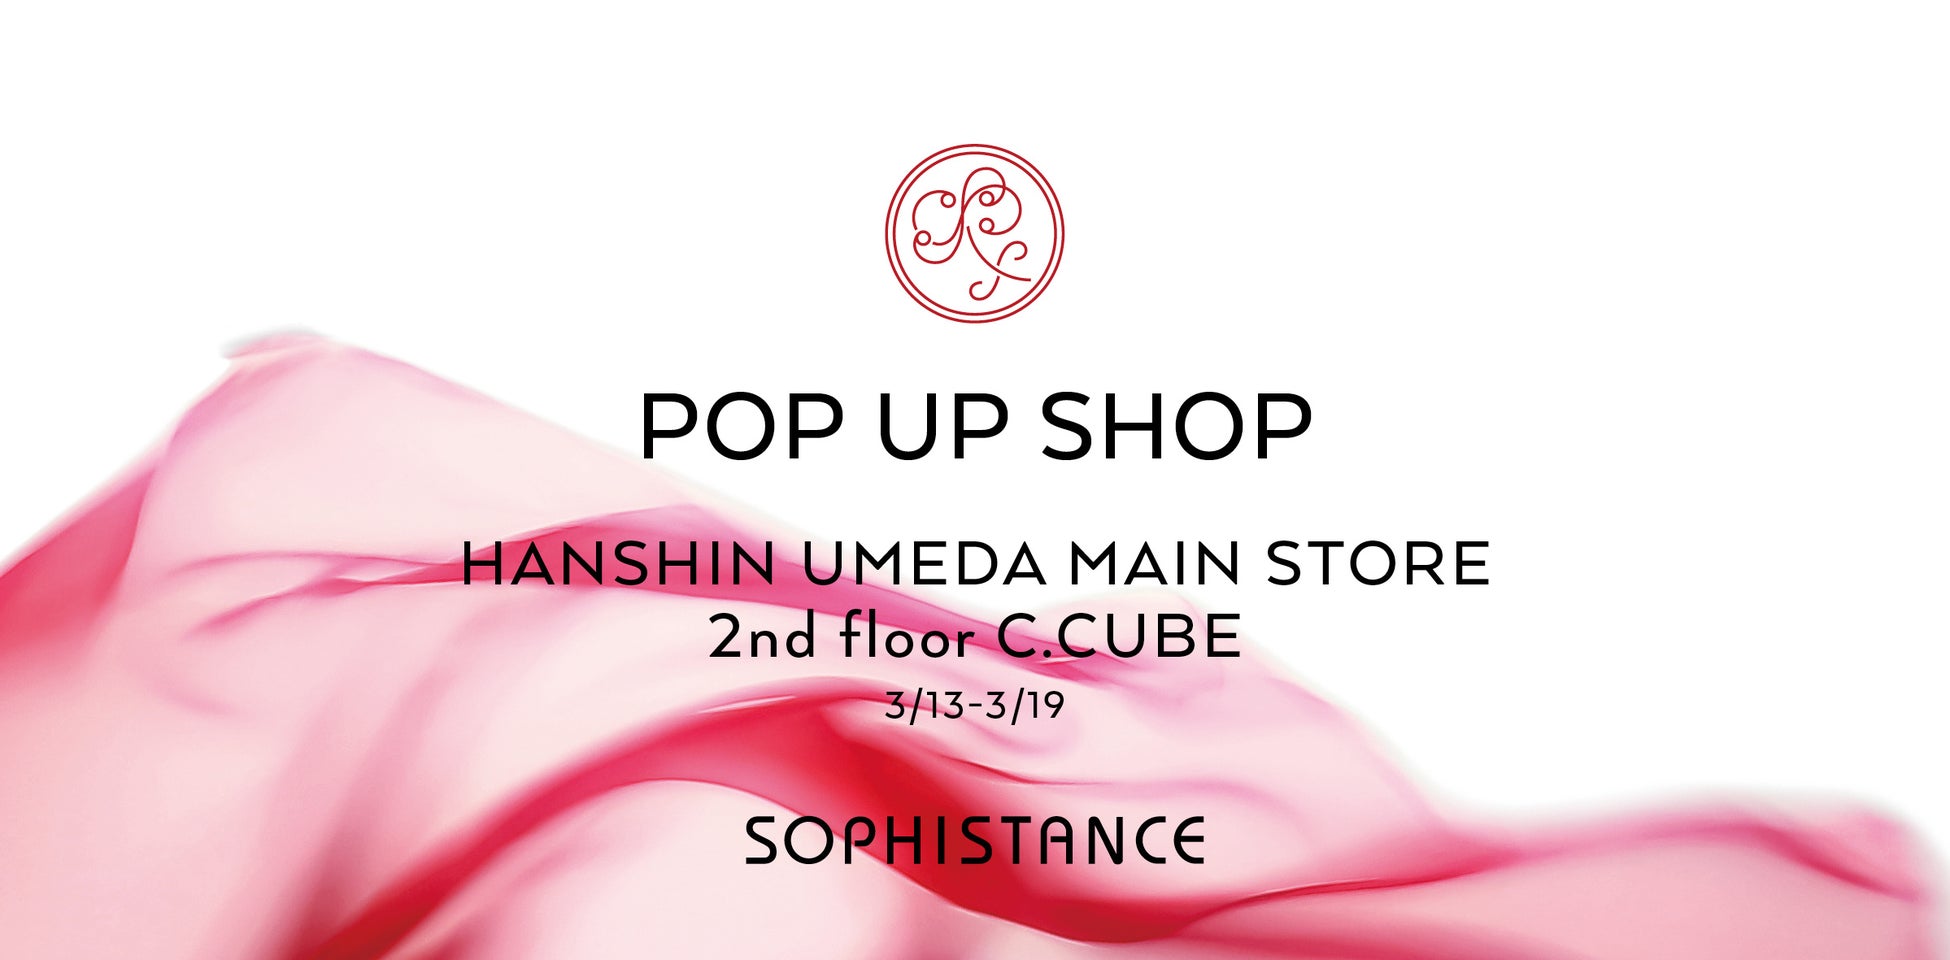 発酵ビューティ® SOPHISTANCE〈ソフィスタンス〉 阪神梅田本店 POP UP SHOP開催！